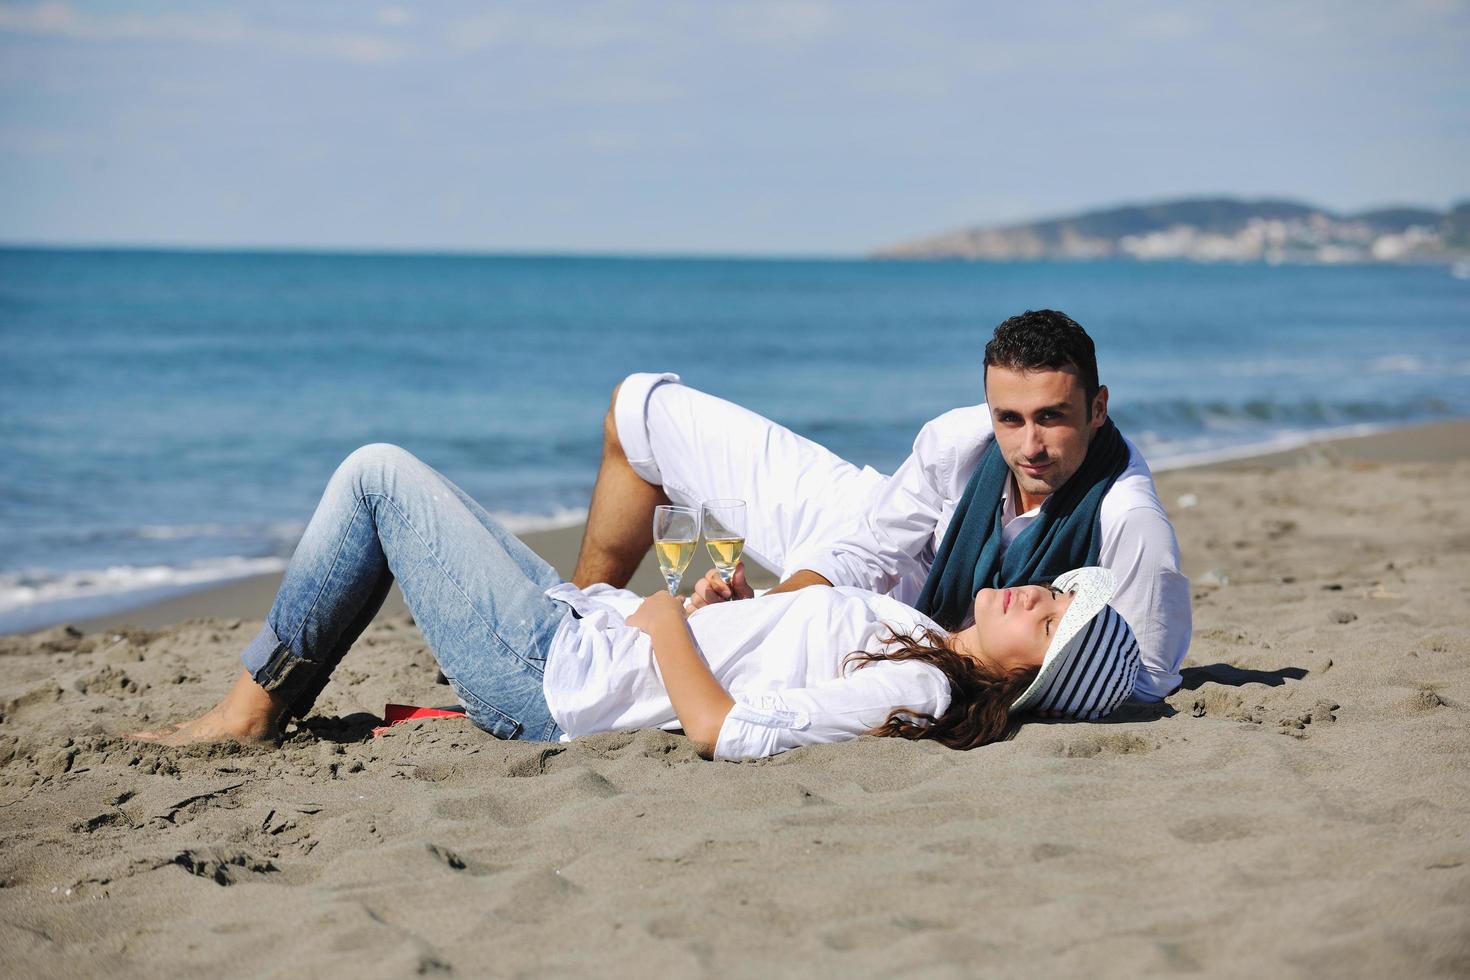 giovane coppia godendo picnic su il spiaggia foto